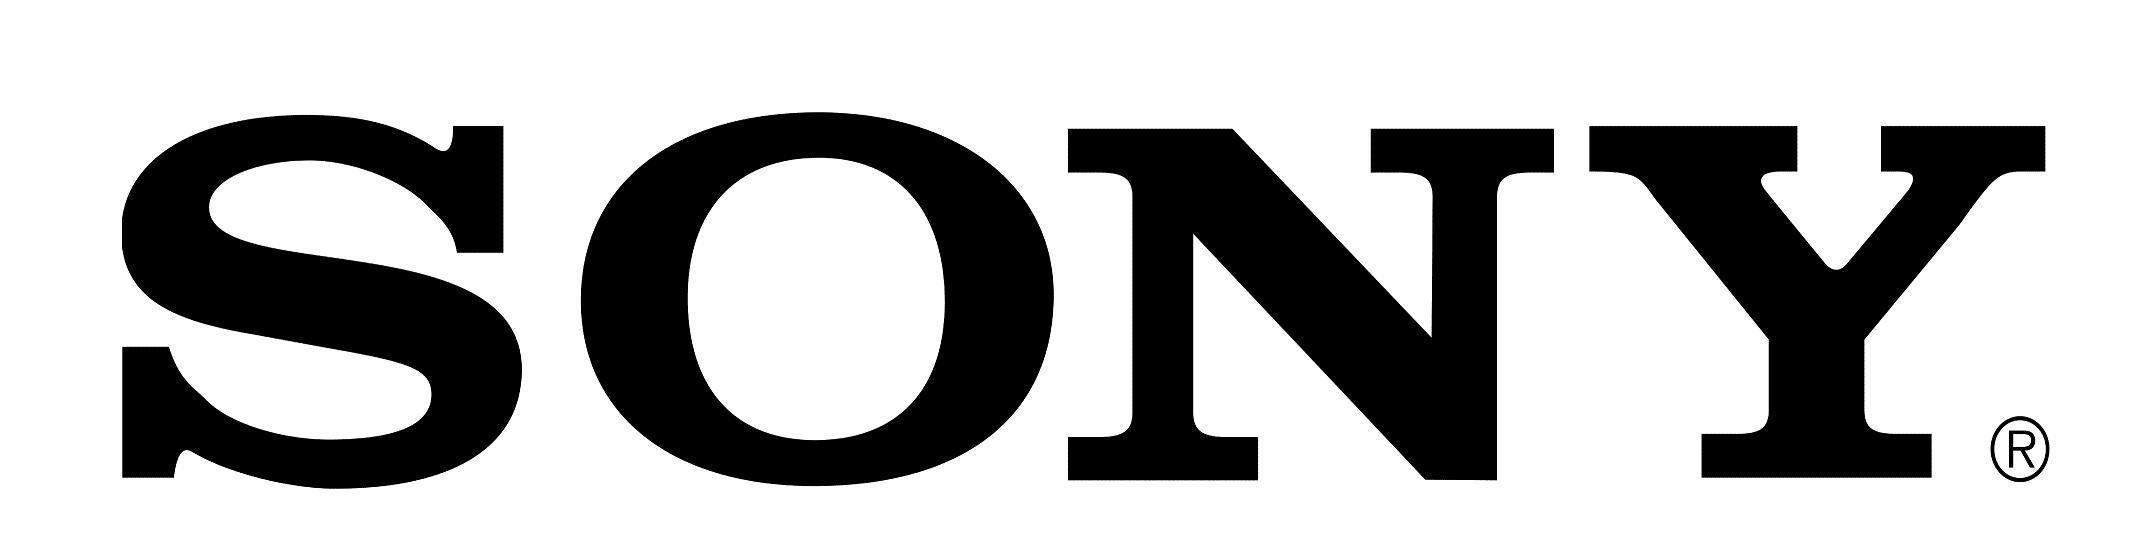 Sony Phone Logo - Logos. Sony, Logos, Sony xperia